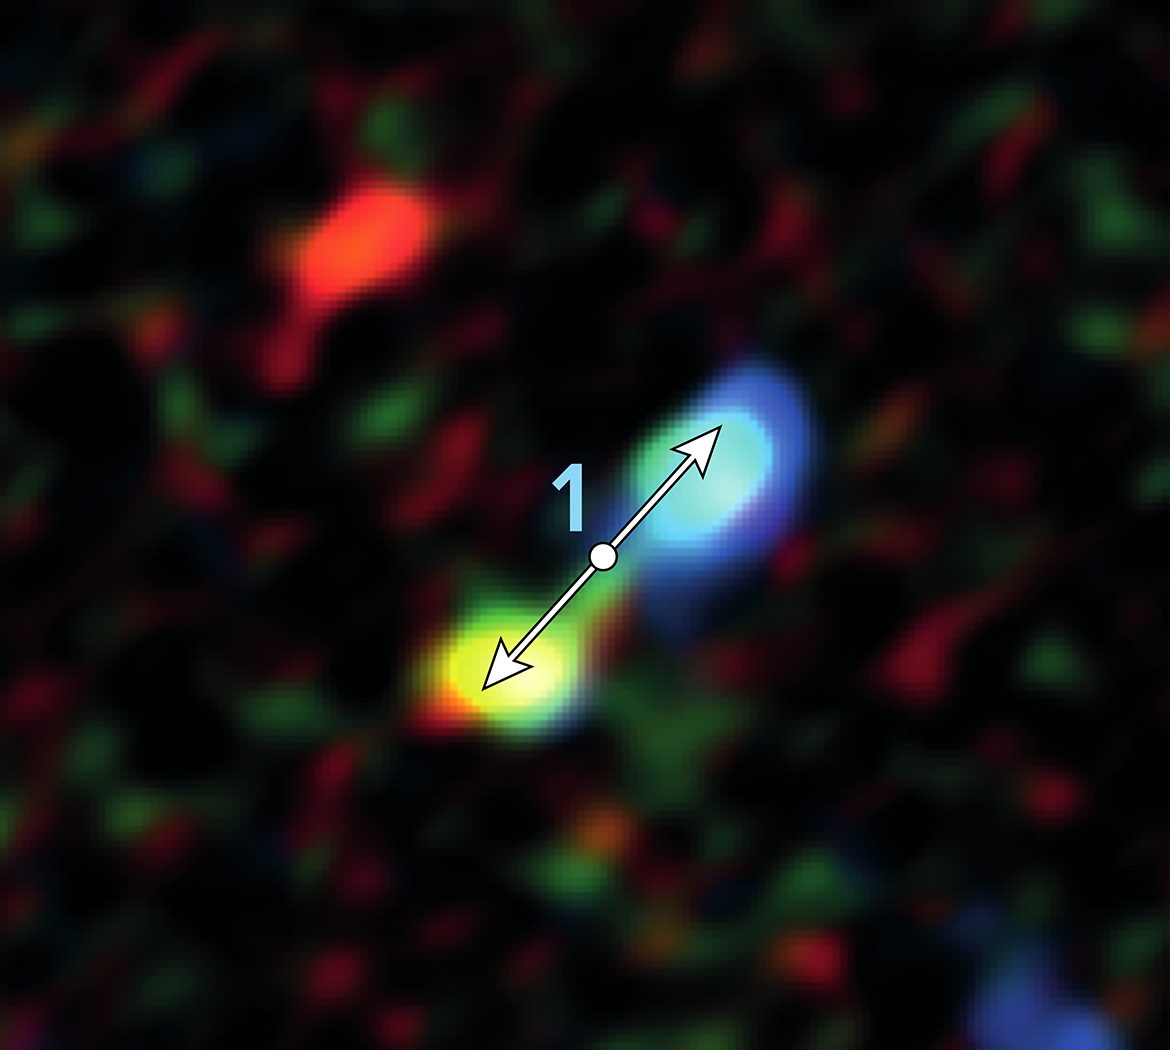 Doble lóbulo producido por los chorros de una estrella en formación cerca del centro galáctico. ALMA descubrió 11 indicios de formación estelar sorprendentemente cerca del agujero negro supermasivo que habita el centro de nuestra galaxia. Créditos: ALMA (ESO/NAOJ/NRAO), Yusef-Zadeh et al.; B. Saxton (NRAO/AUI/NSF)